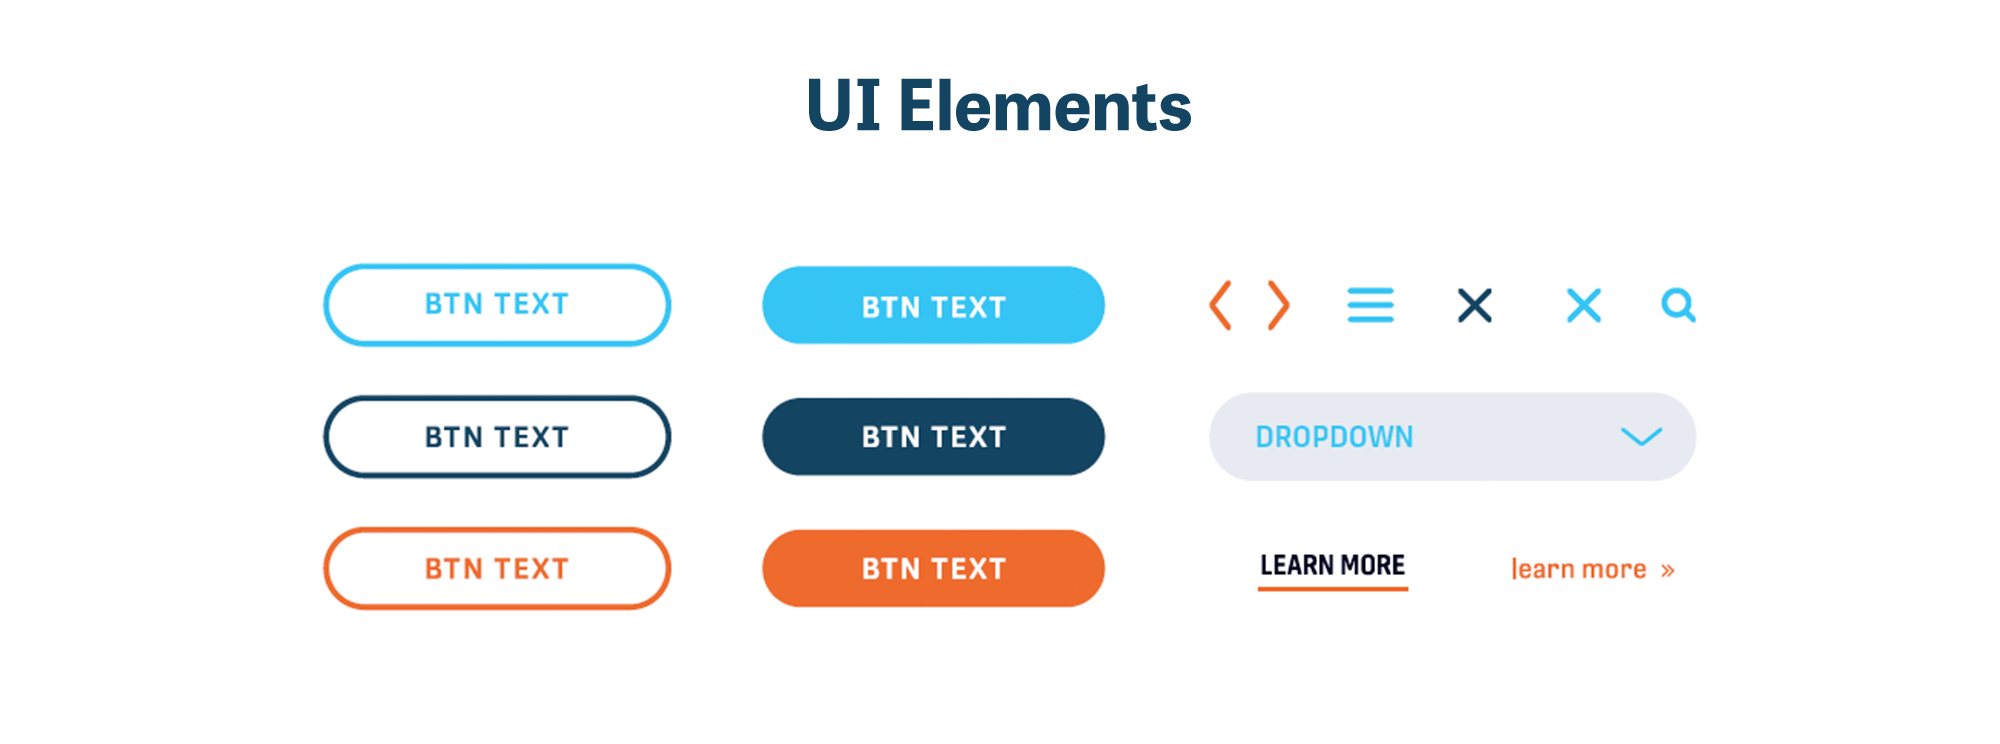 CSpire Branding UI Elements